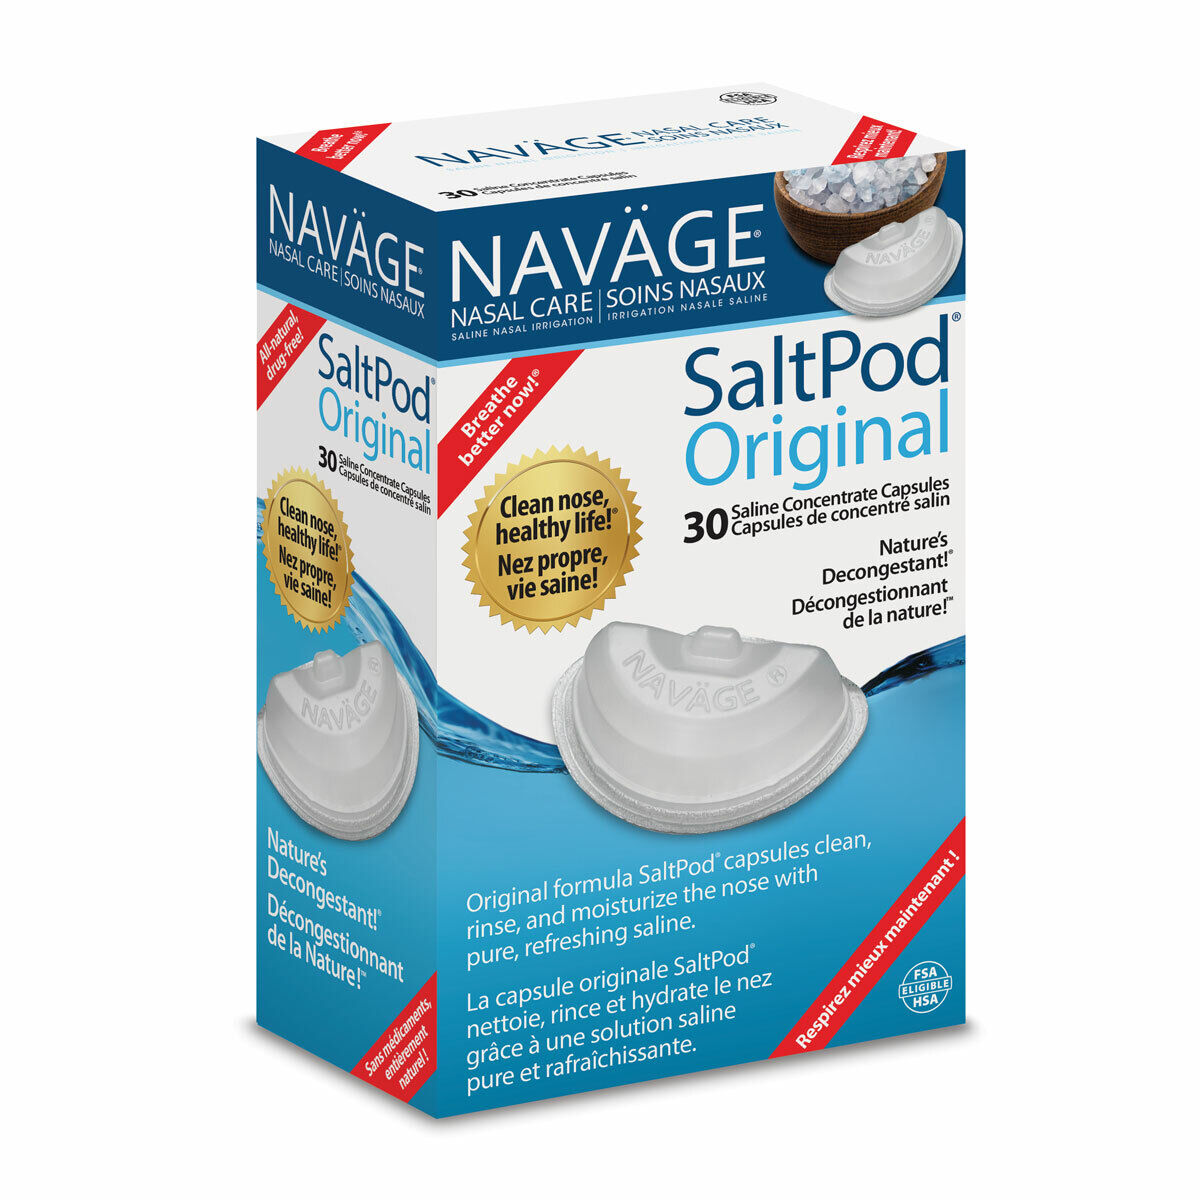 NAVAGE ORIGINAL SALTPOD 30-PACK (30 SaltPods)  Navage RSI14